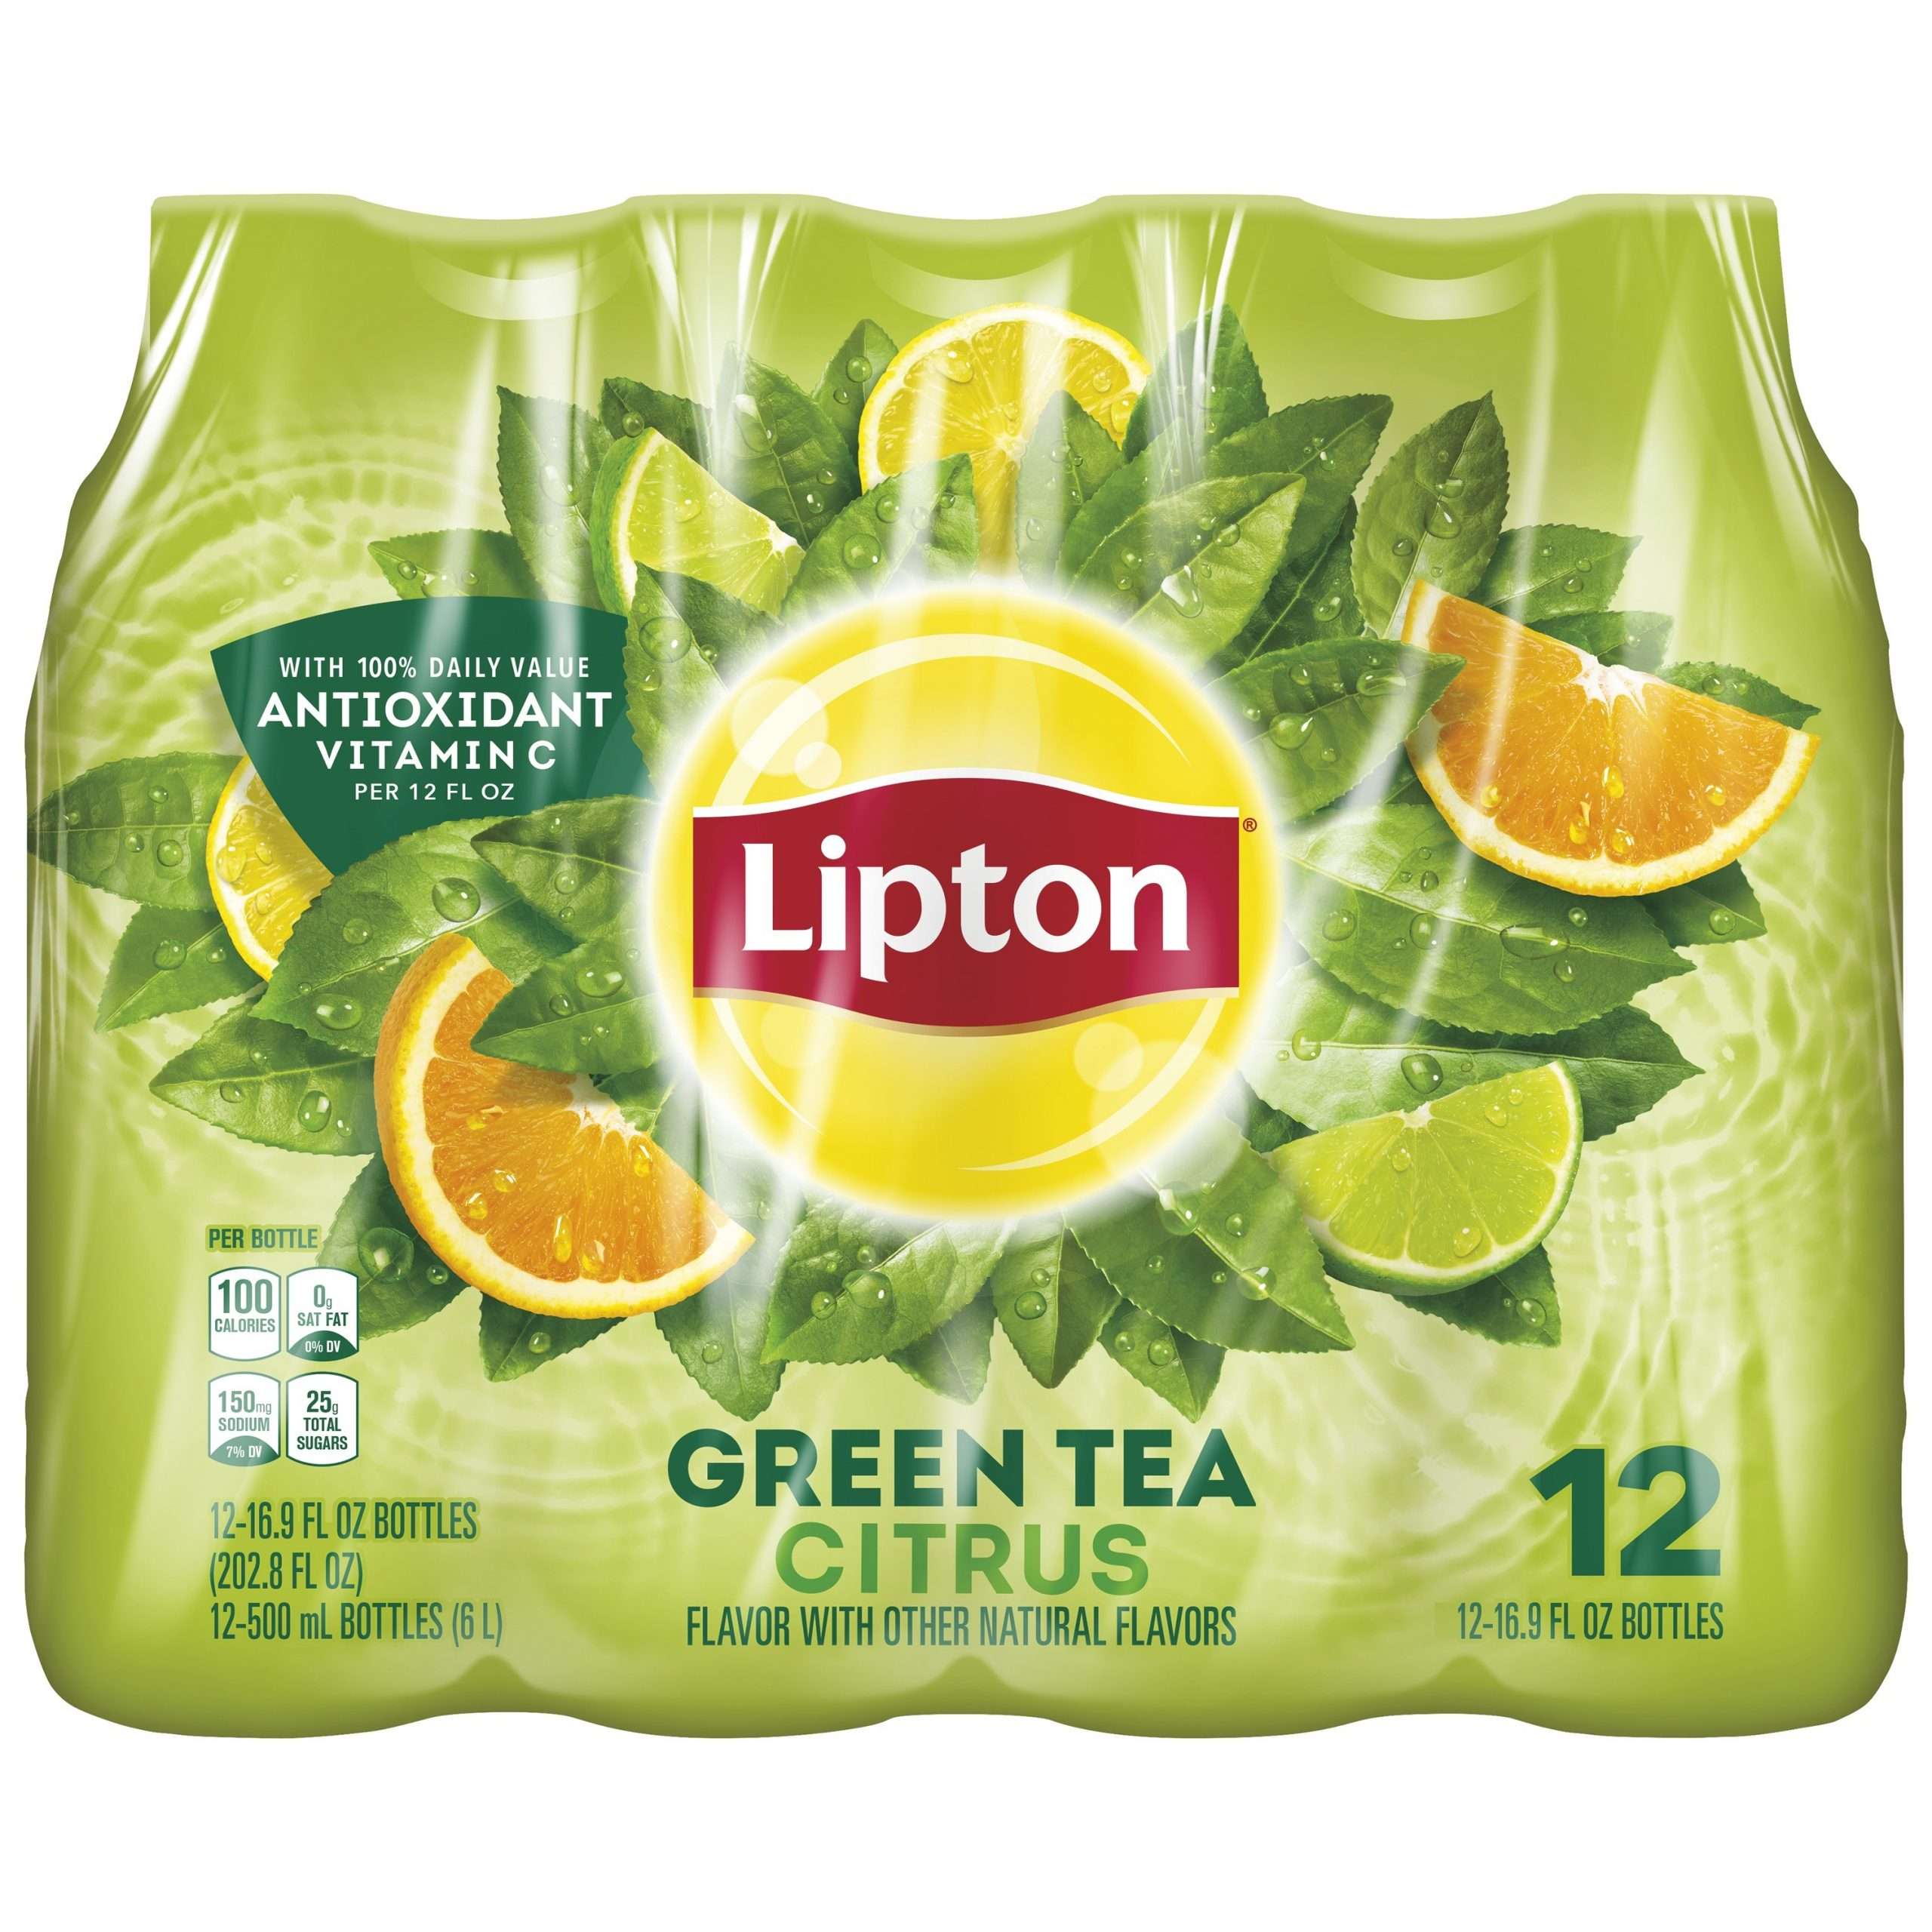 (12 Bottles) Lipton Green Tea Citrus, 16.9 fl oz Bottles